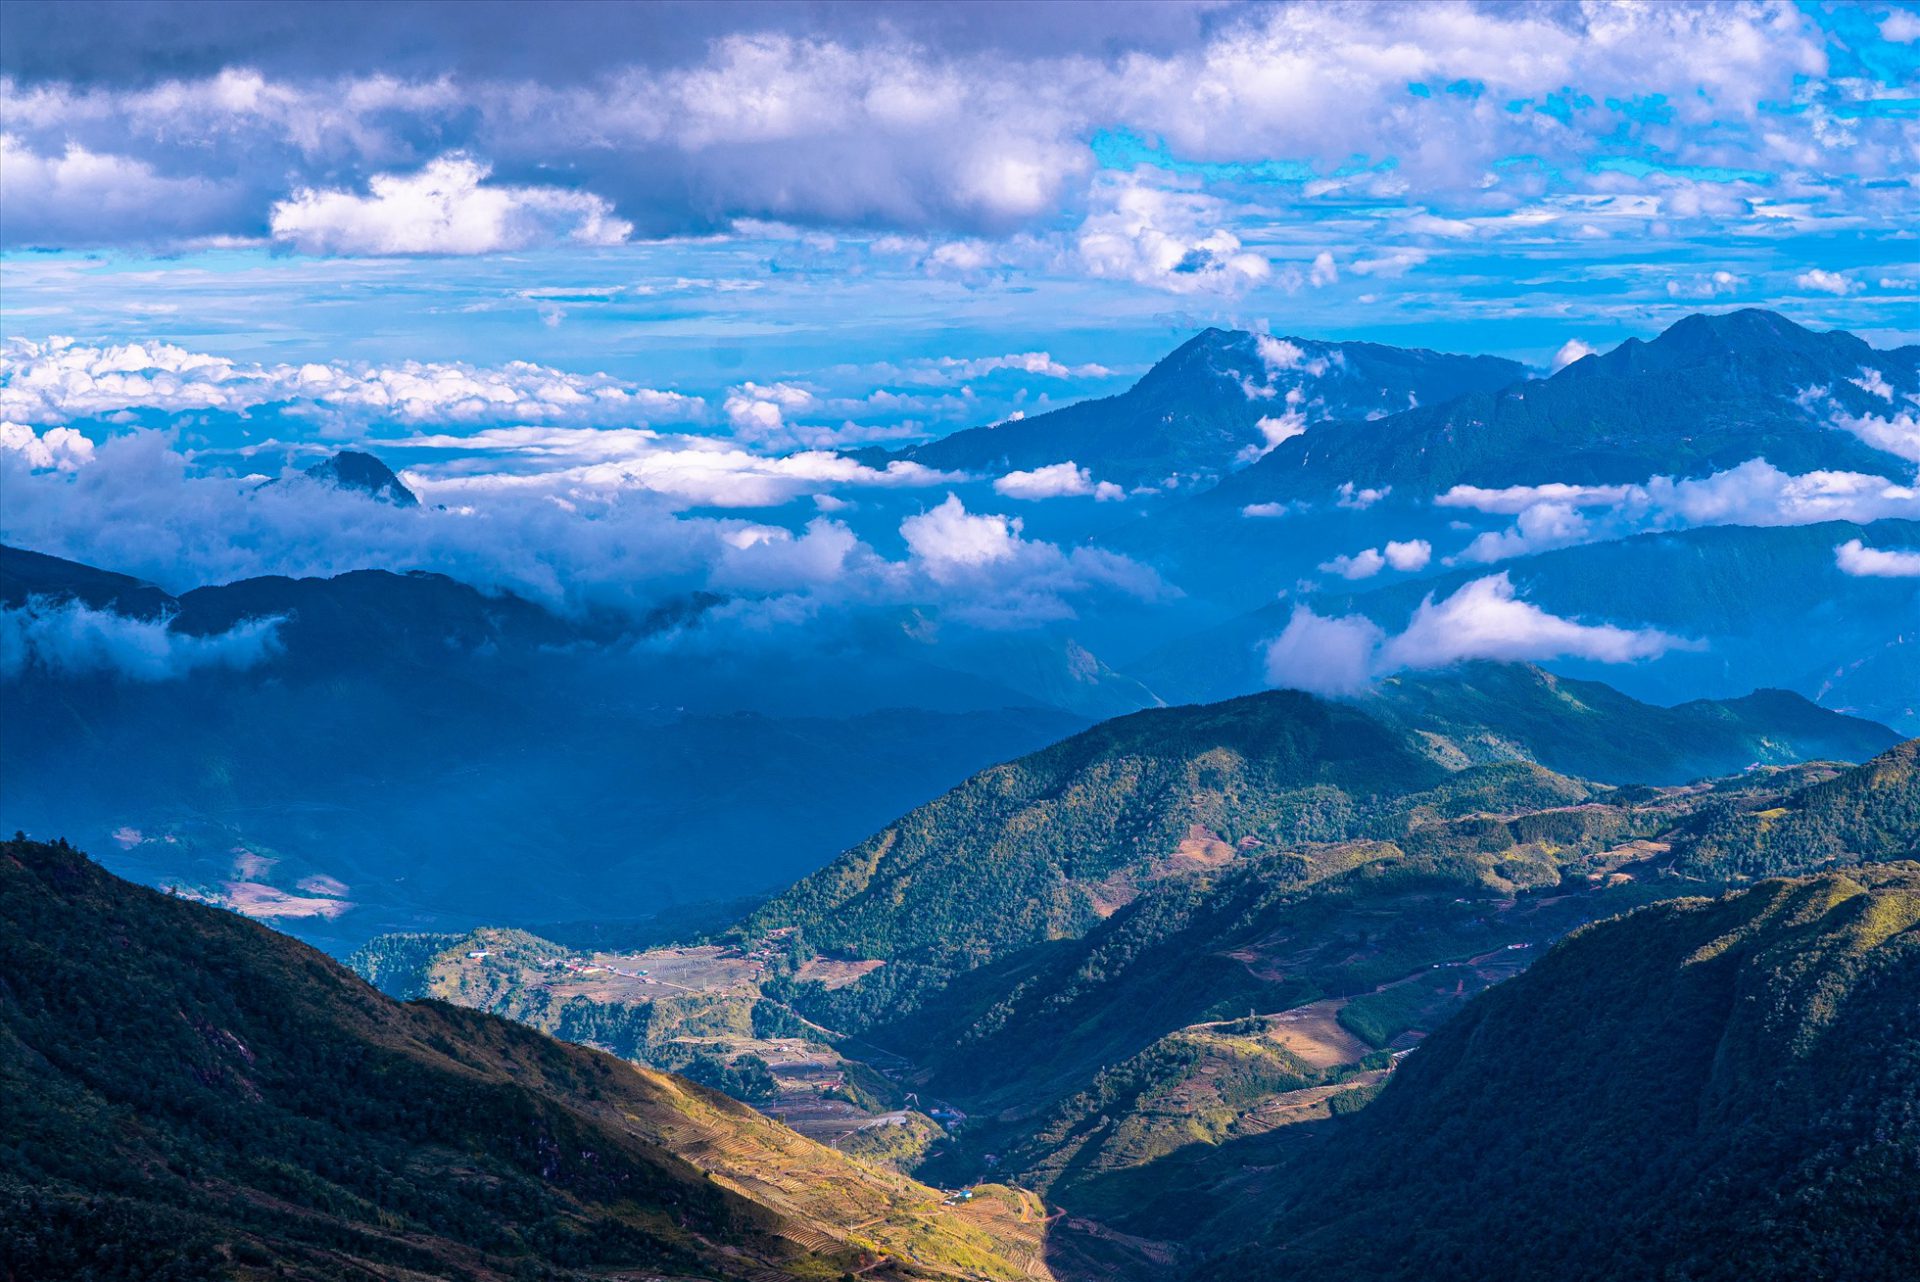 Đỉnh Nhìu Cồ San Lào Cai sở hữu địa hình độc đáo, phân tầng rõ rệt từ chân núi lên đến đỉnh núi từ vùng thảo nguyên bát ngát, đến những cánh rừng nguyên sinh. “Đến đây không chỉ được trải nghiệm cảm giác săn mây mà còn được mở rộng thế giới quan trong hành trình trekking lên đỉnh núi“, Thùy Dương chia sẻ.